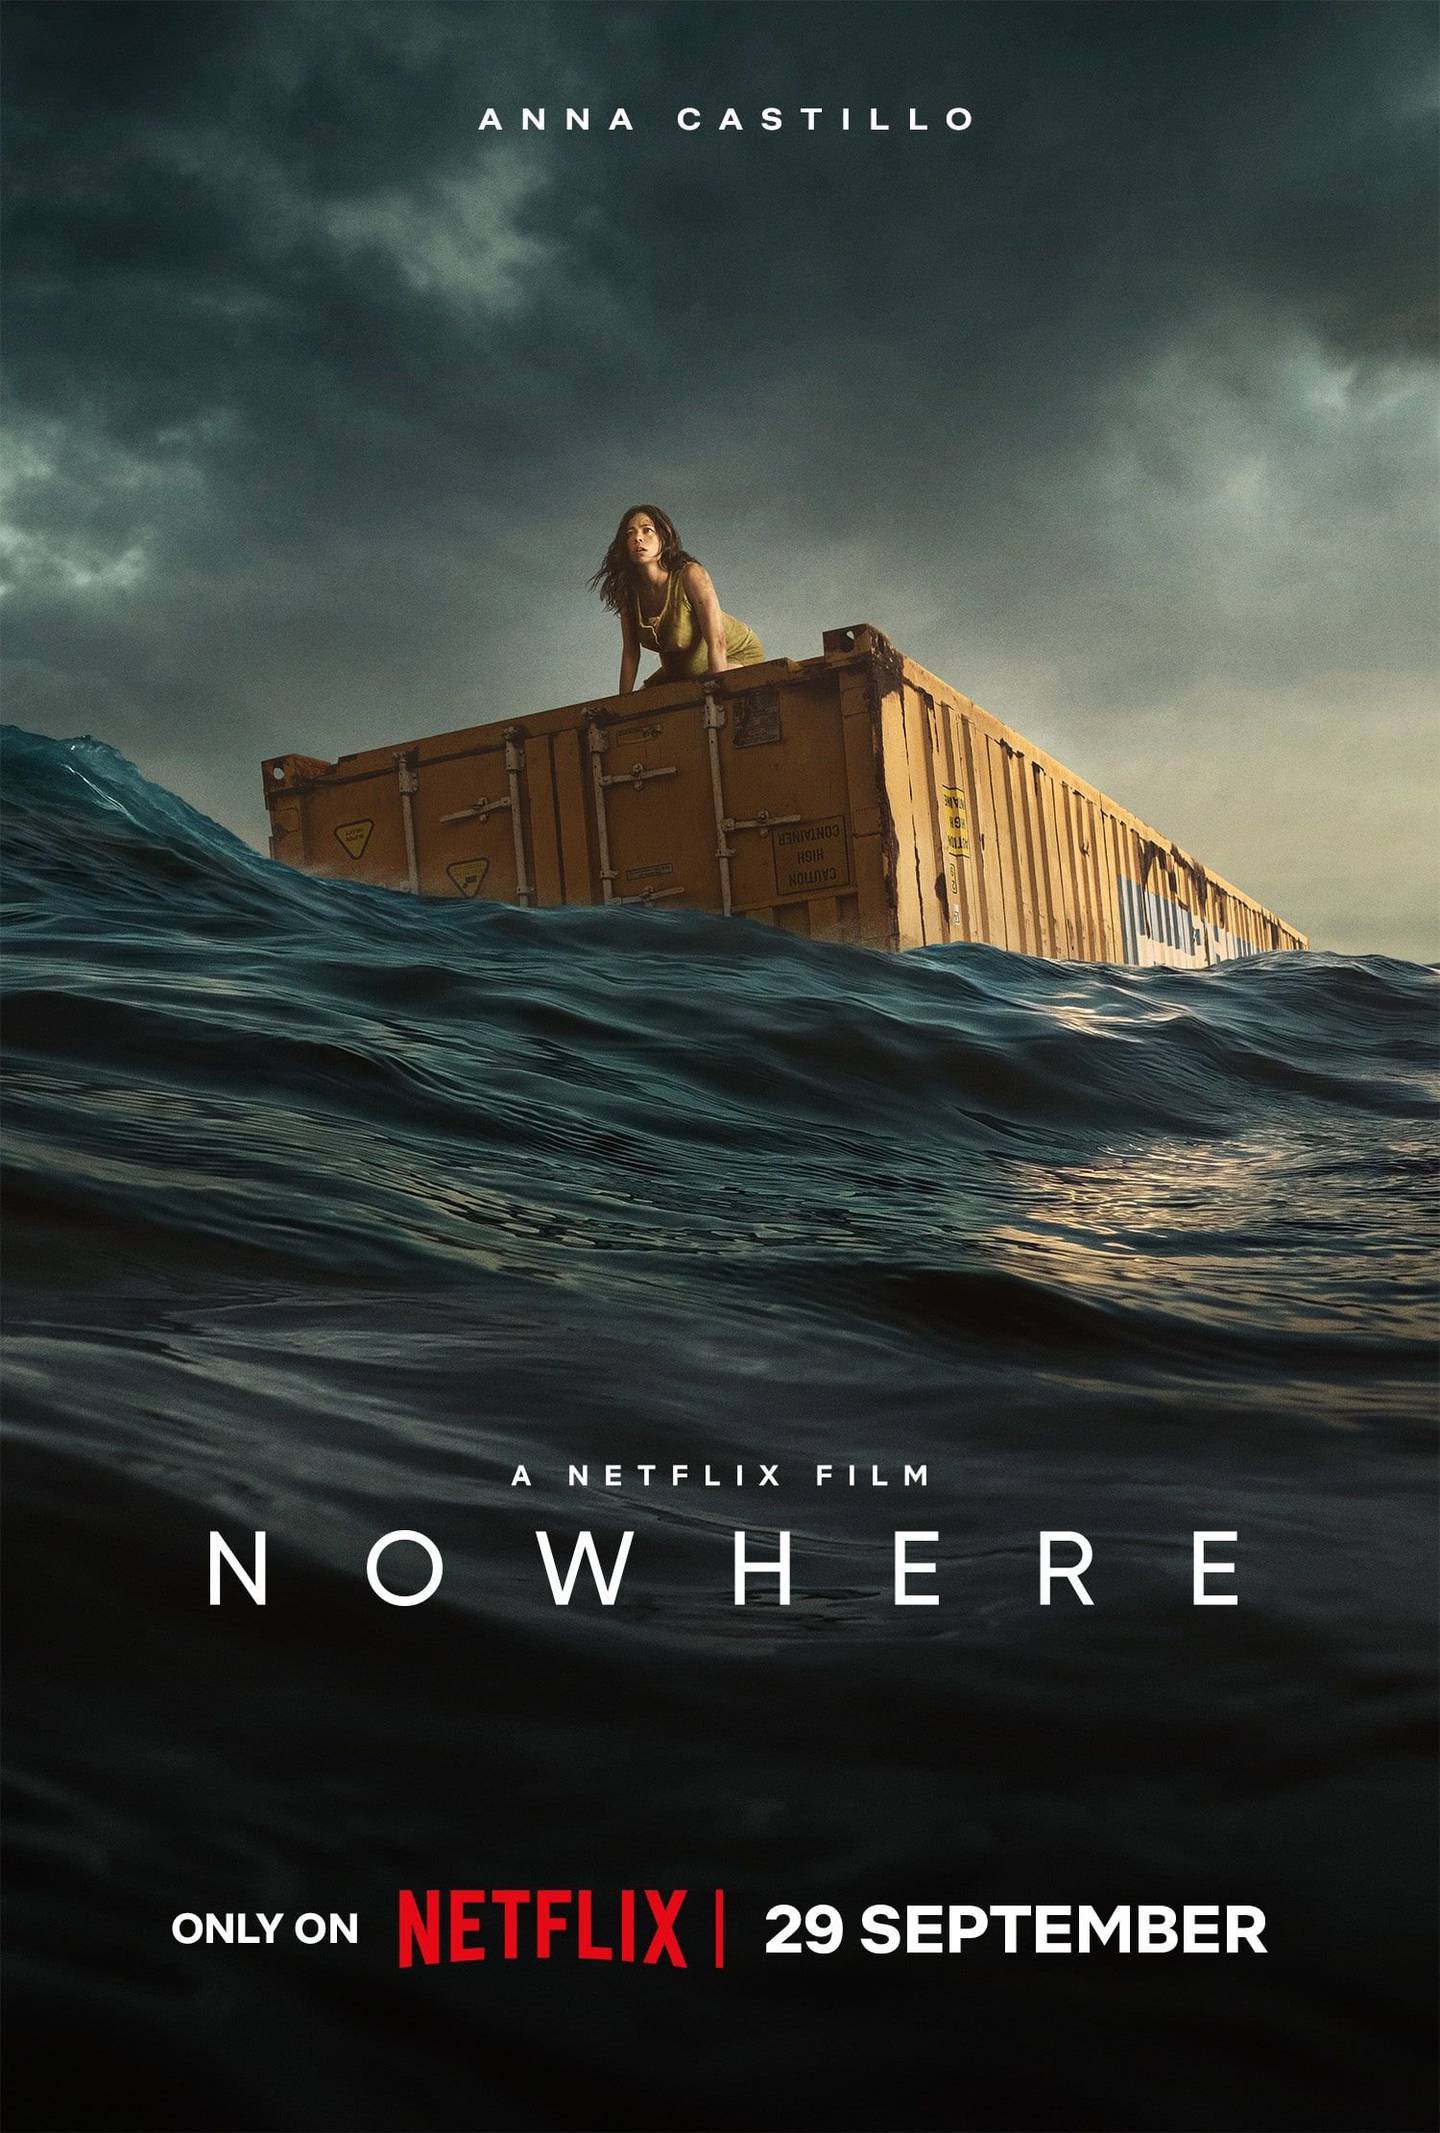 Película Nowhere llegó al número uno en su primer día en la plataforma